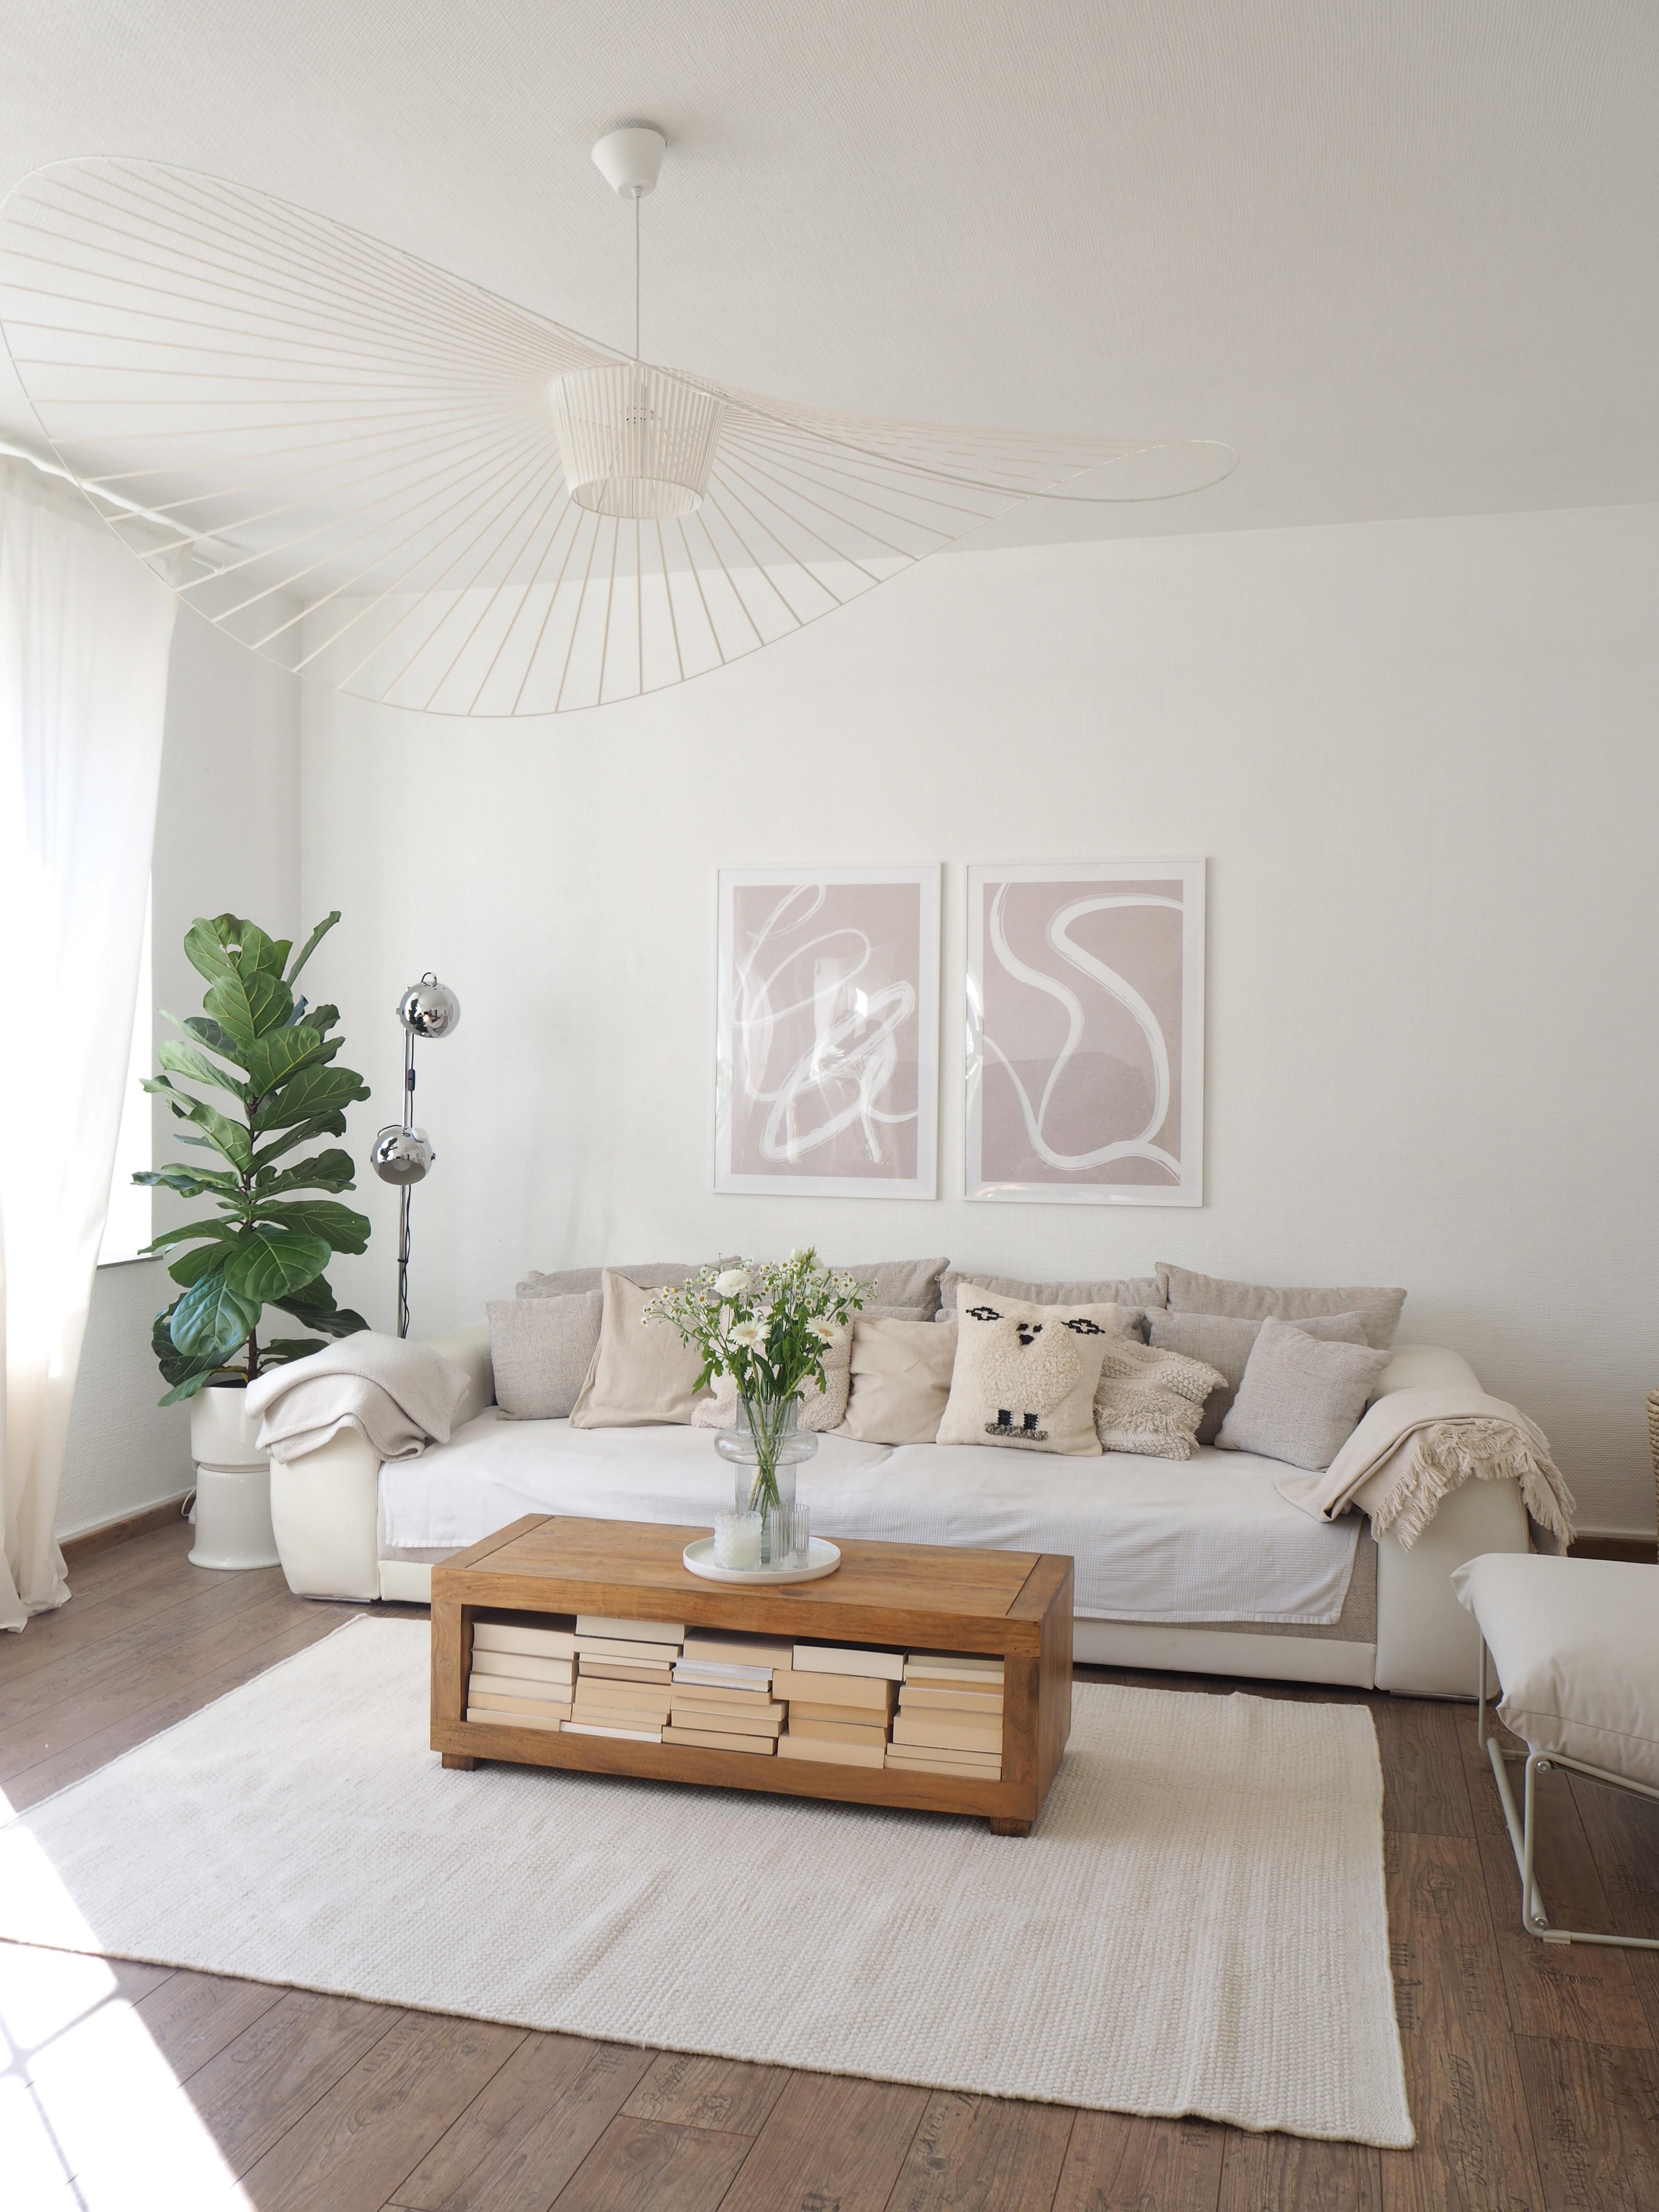 neuer #teppich #skandi #boho #couch #sofa #wohnzimmer #altbau #minimalistisch #grau #holz #kissen #dekoidee #pflanzen